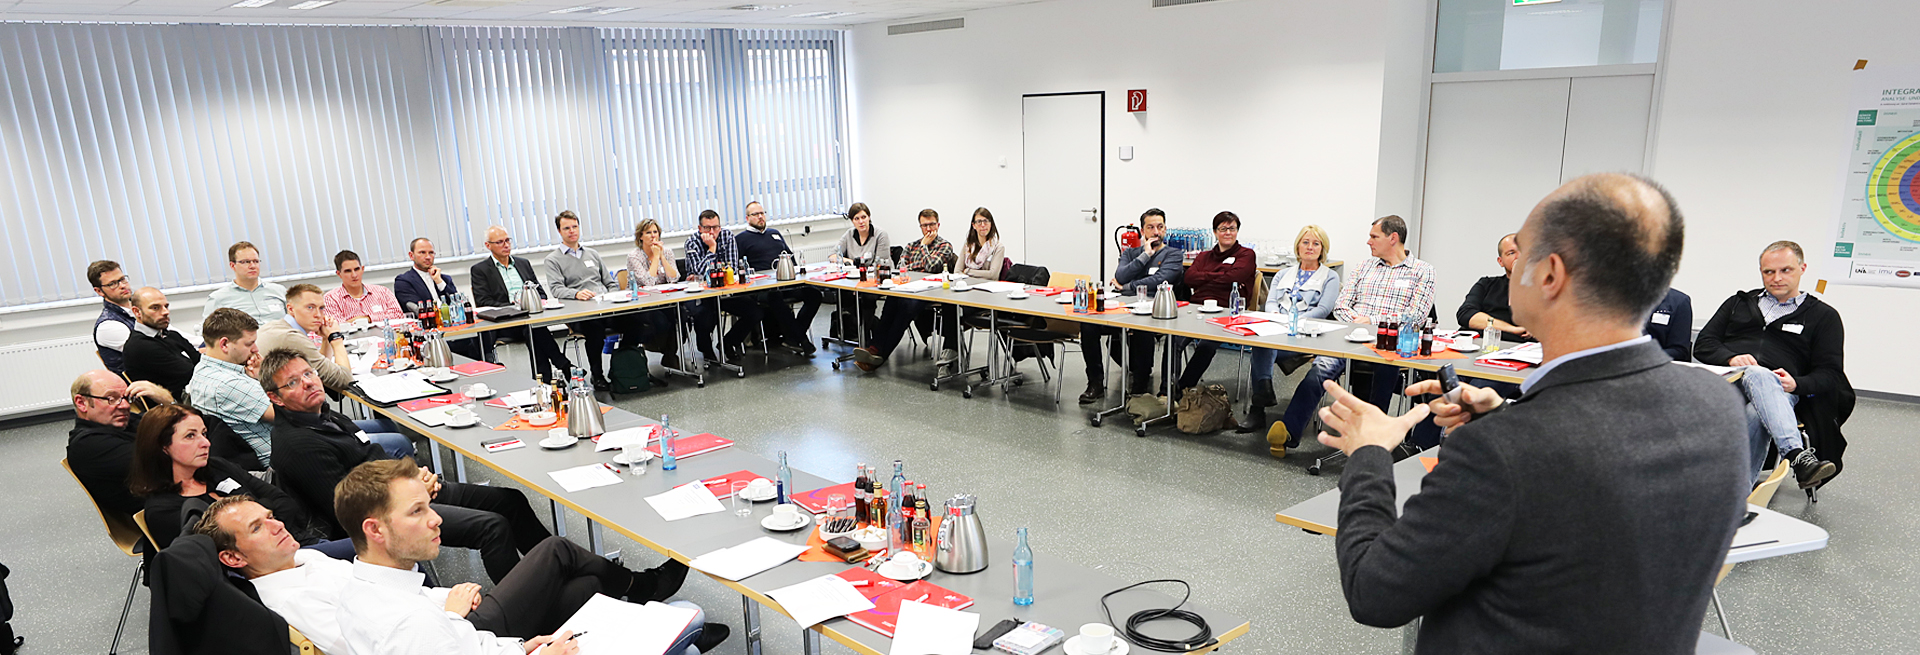 Seminar «Maßhaltigkeit und DIN – Toleranzen in der Kunststofftechnik» in Lüdenscheid